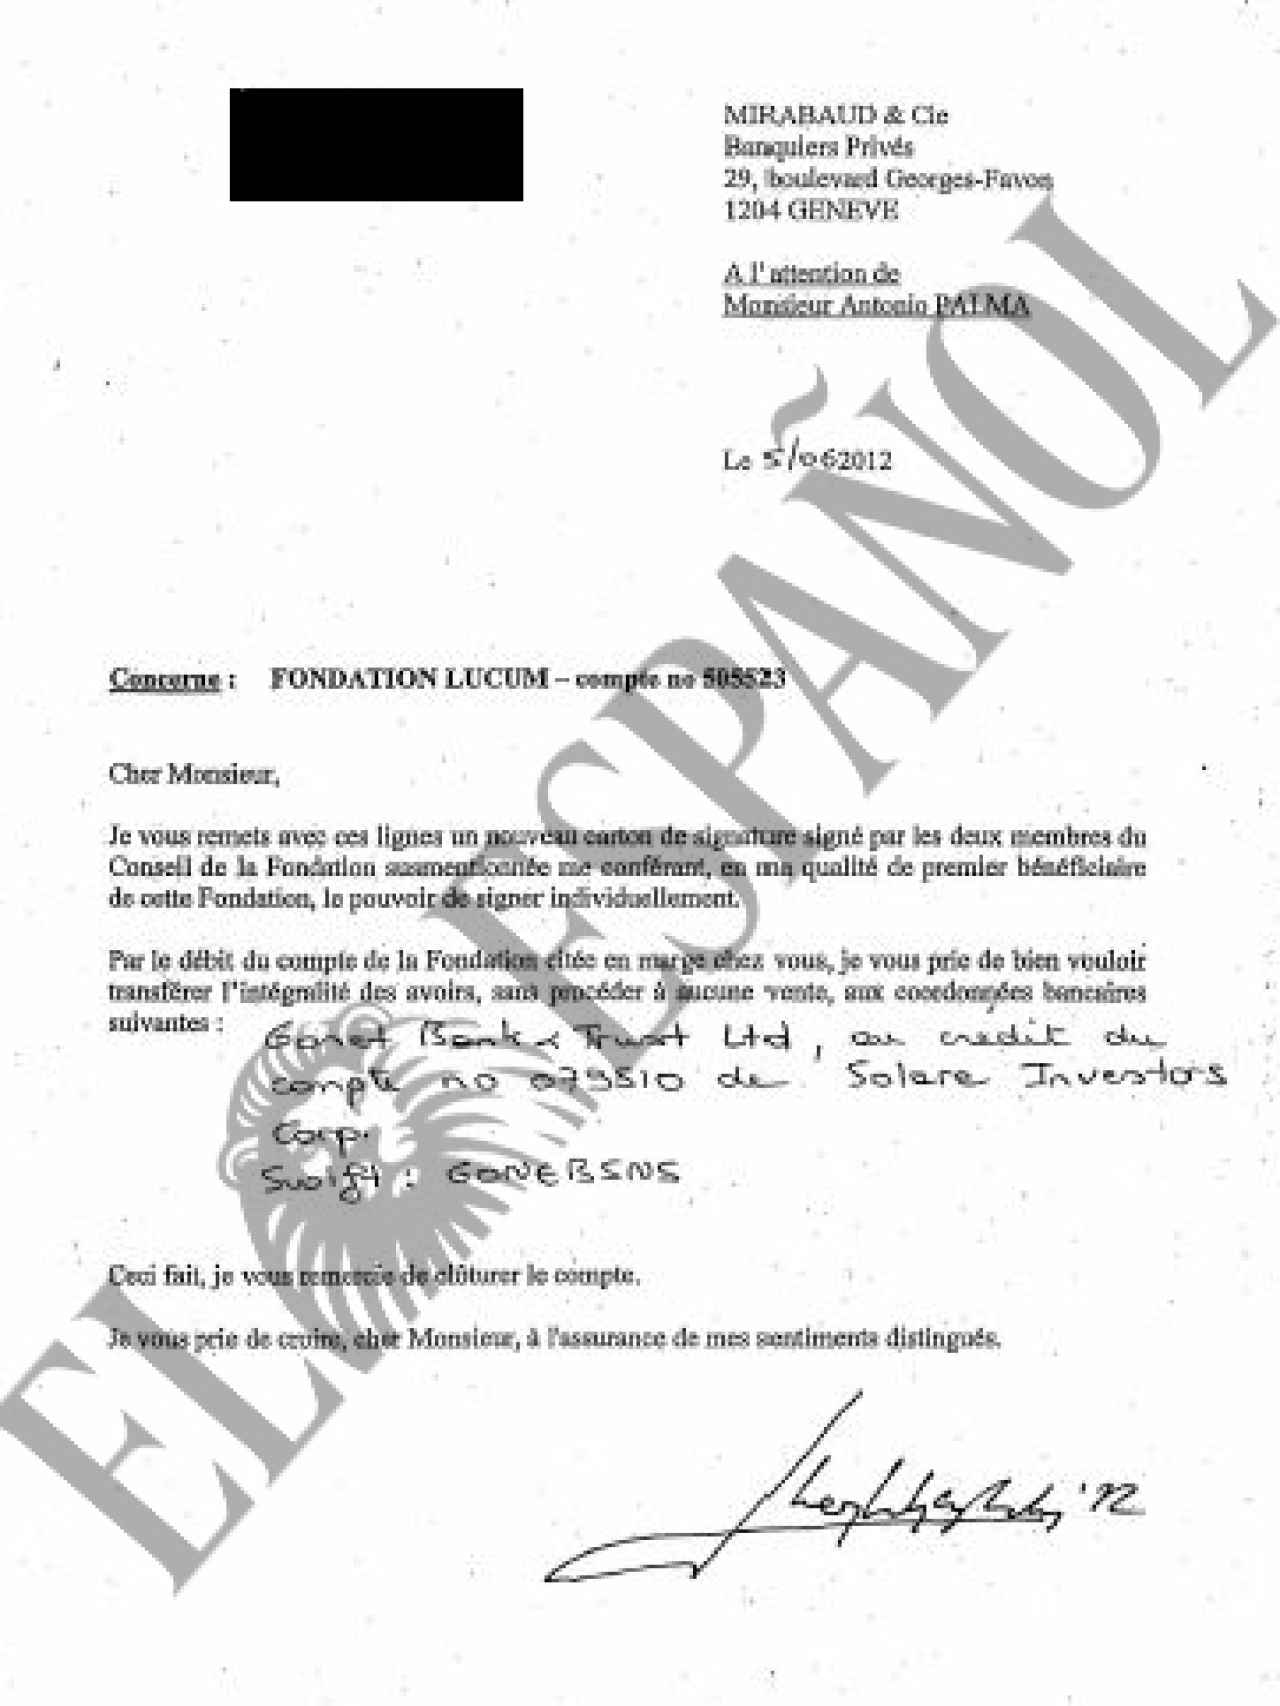 Carta de Don Juan Carlos al presidente de la banca Mirabaud./